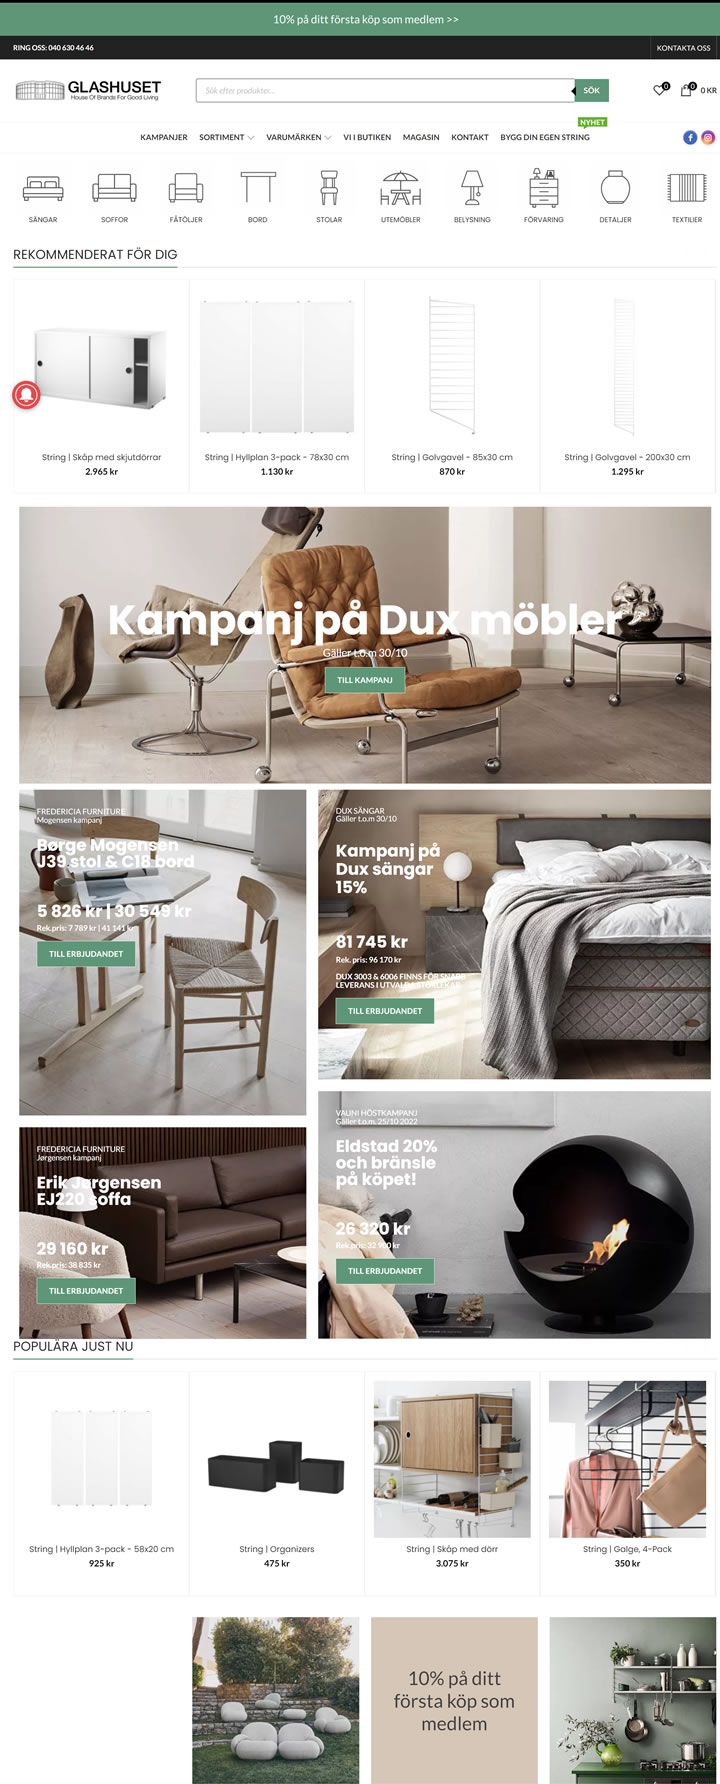 瑞典家具家居用品购买网站Glashuset，打造理想家居空间